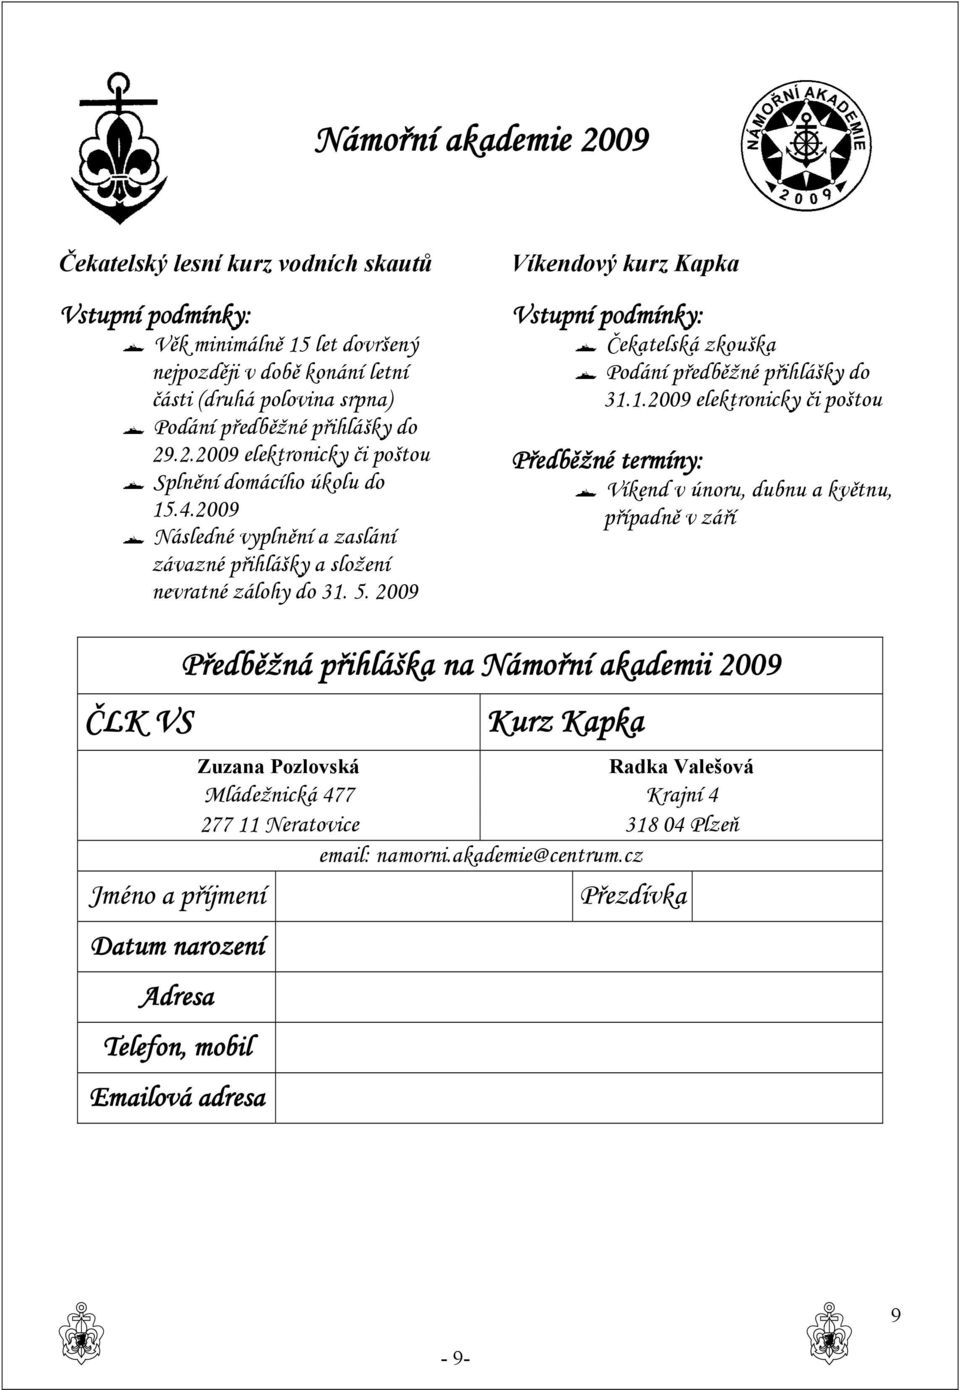 2009 Víkendový kurz Kapka Vstupní podmínky: Čekatelská zkouška Podání předběžné přihlášky do 31.